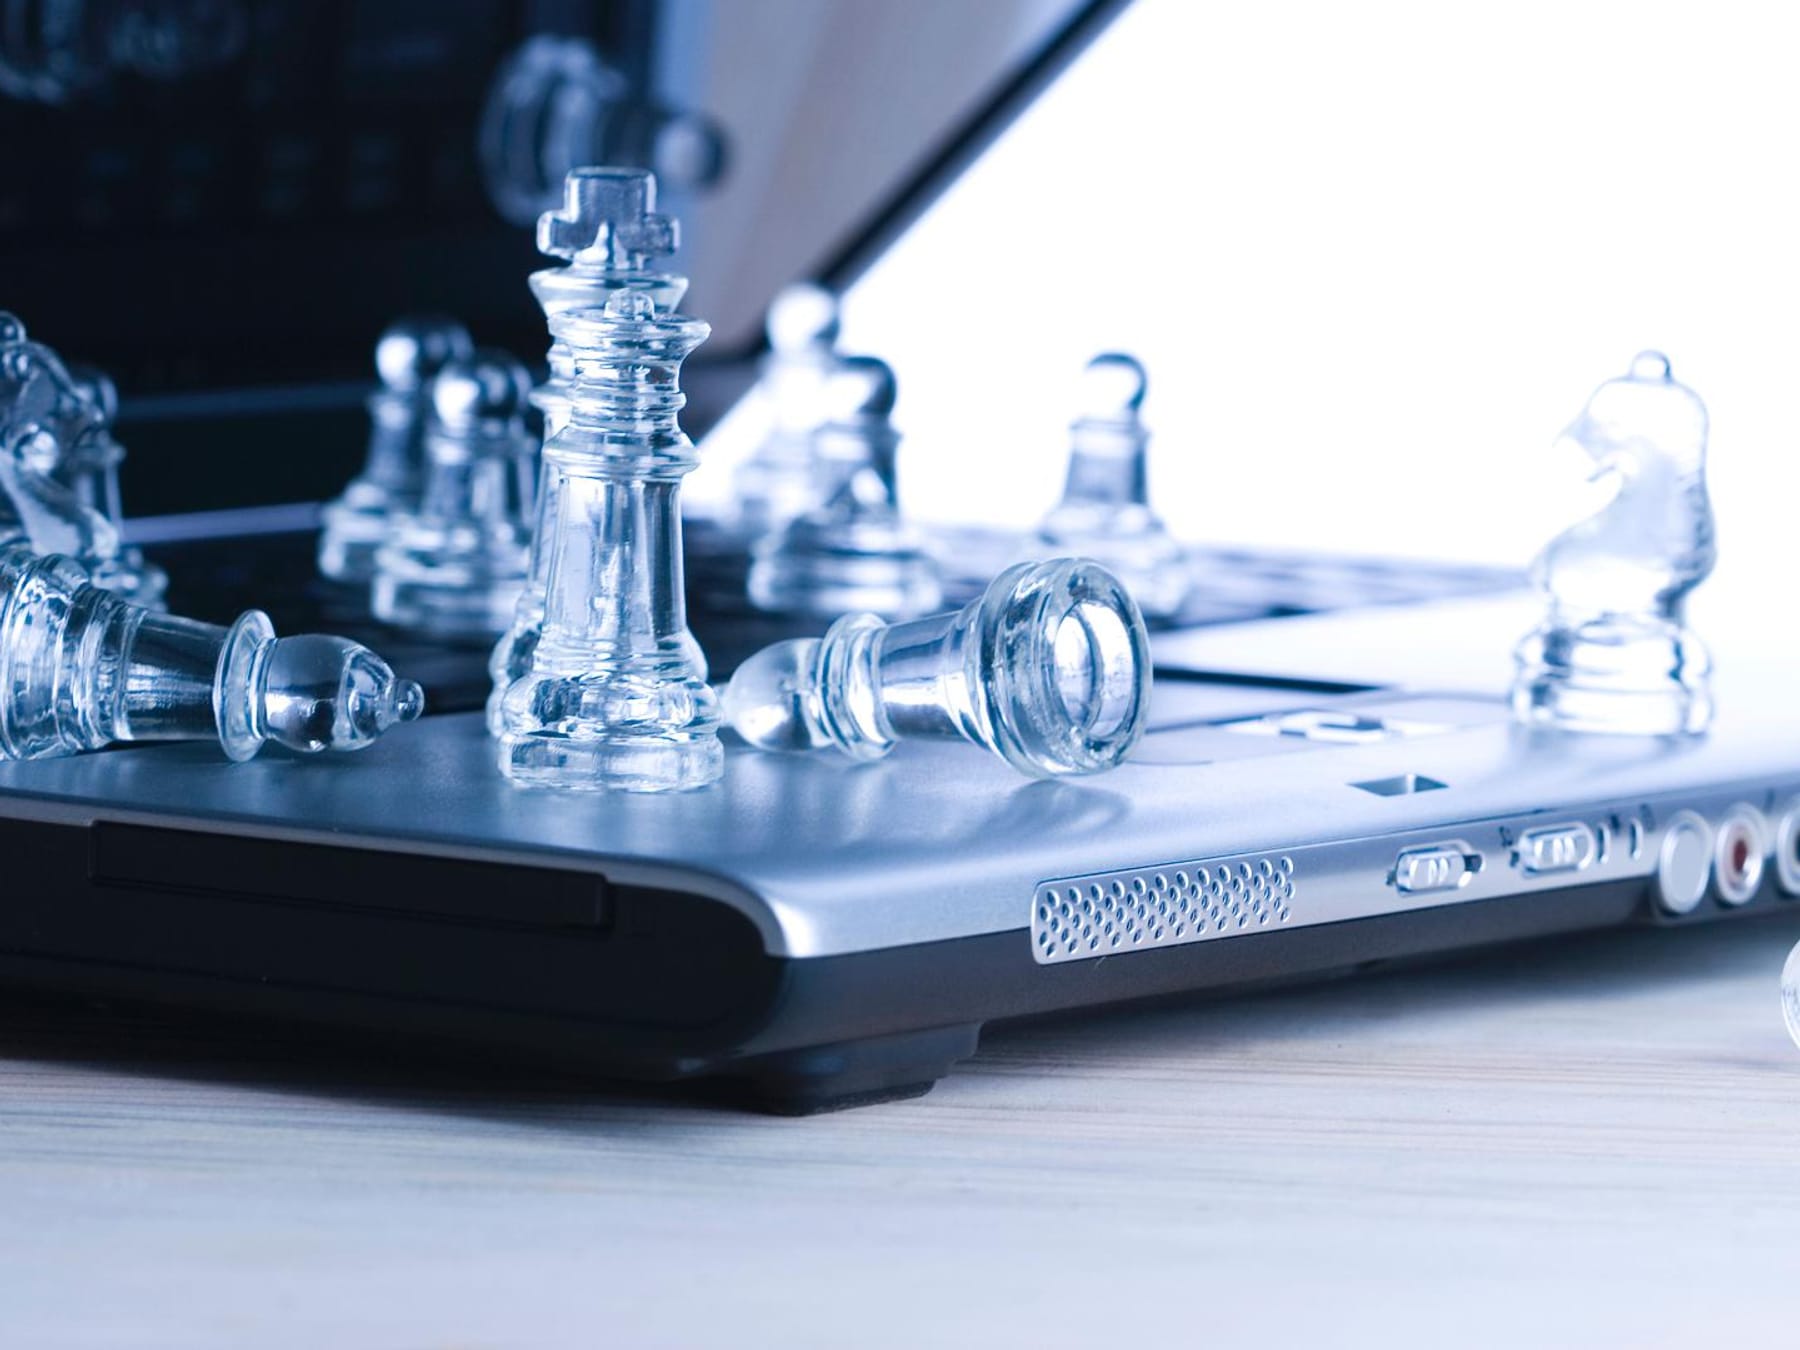 Schach online spielen: 7 bekannte Anbieter im Überblick